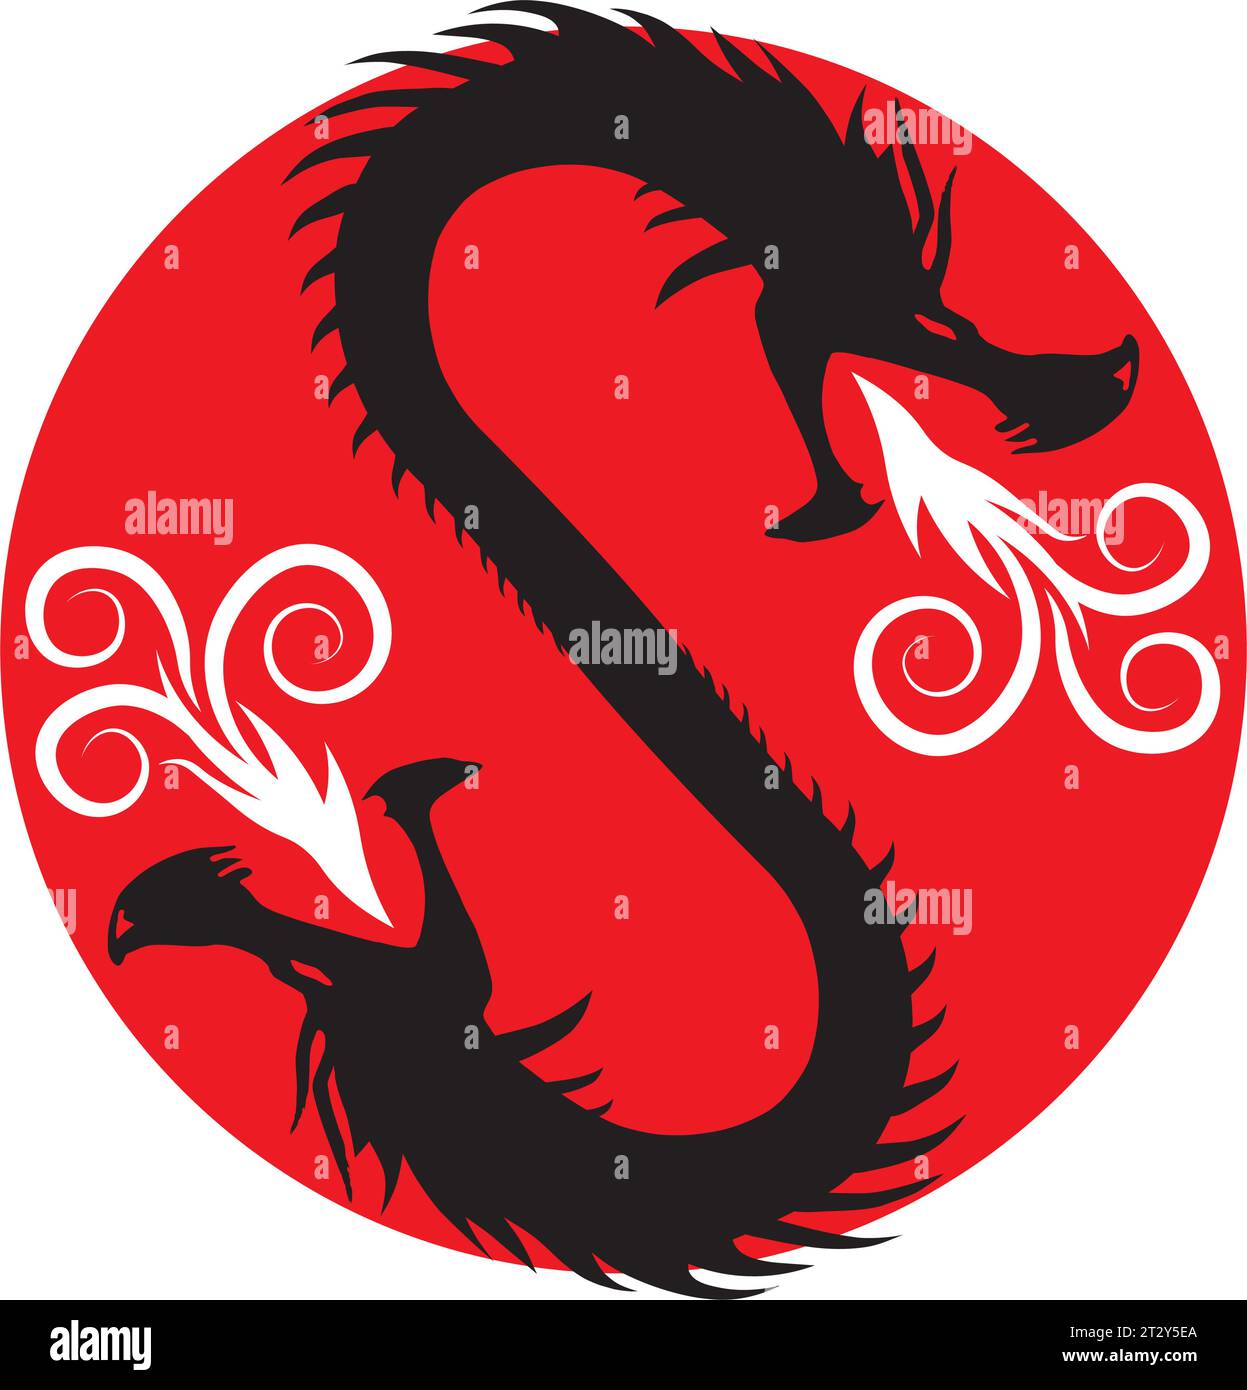 La fusion mythique des dragons, symbolisant l'équilibre et l'harmonie dans le taoïsme, captive par son interprétation artistique du folklore ancien et du spiritu Illustration de Vecteur